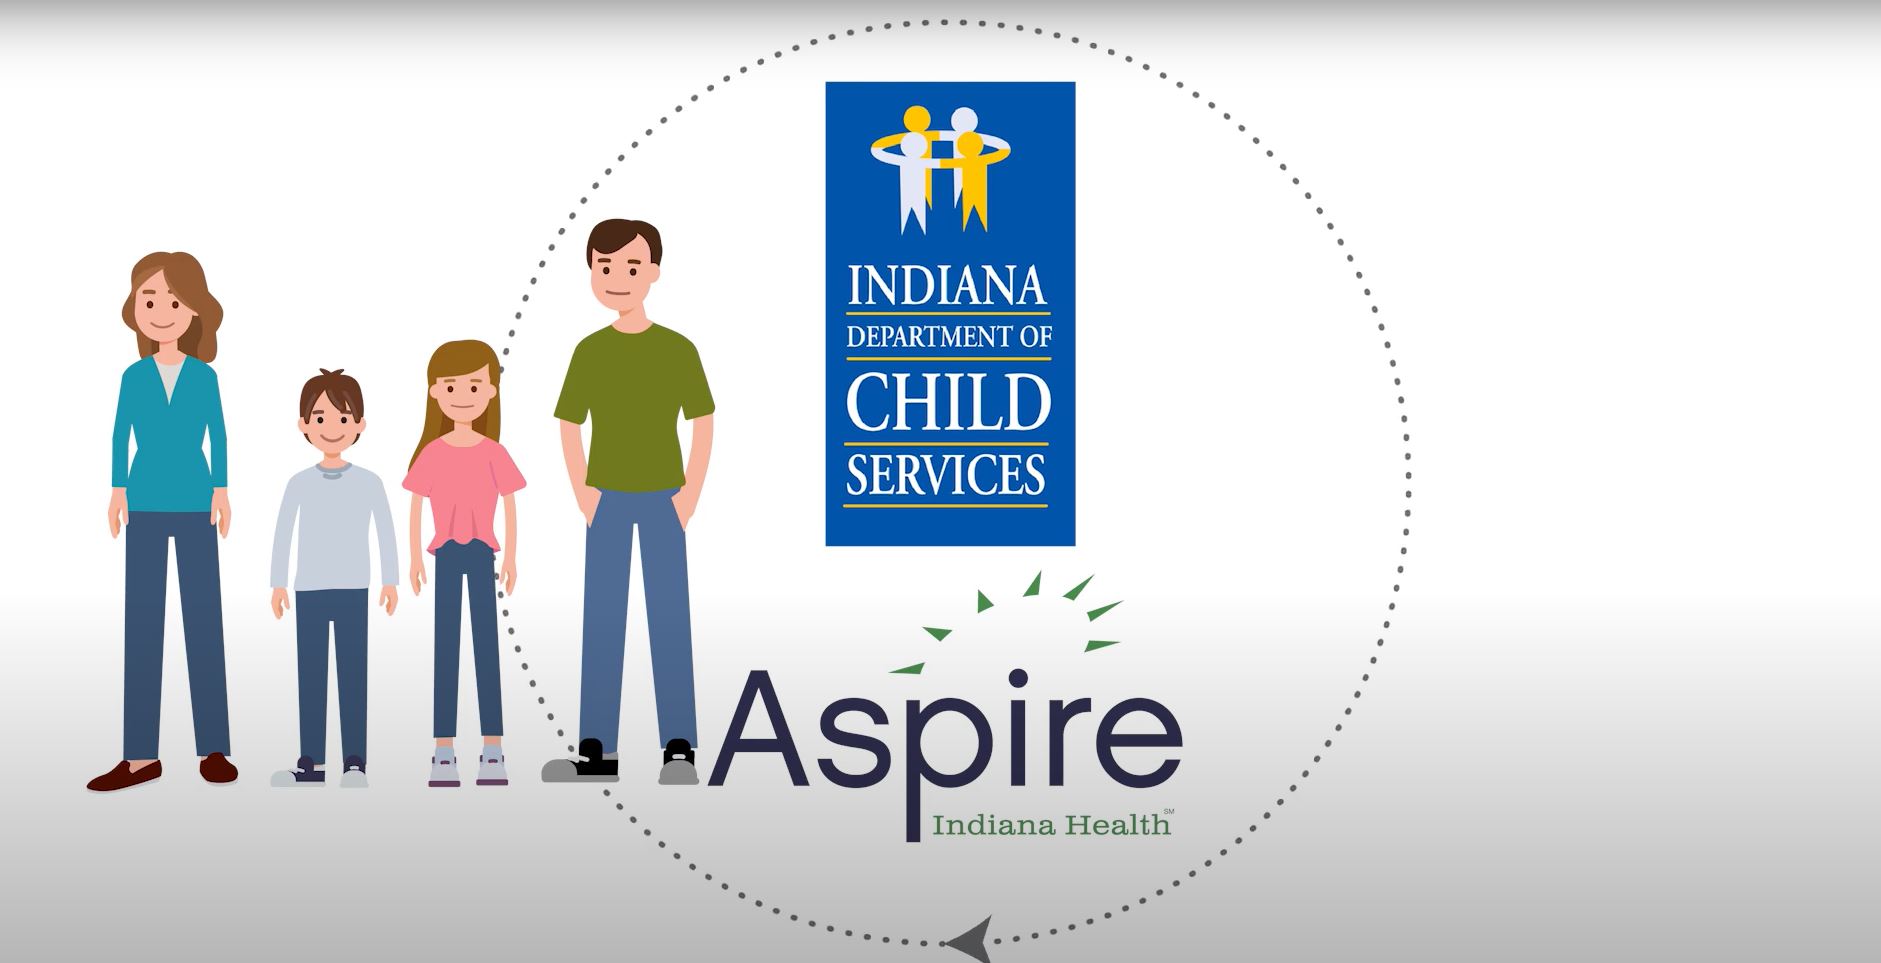 Aspire Indiana Health/DCS Partnership